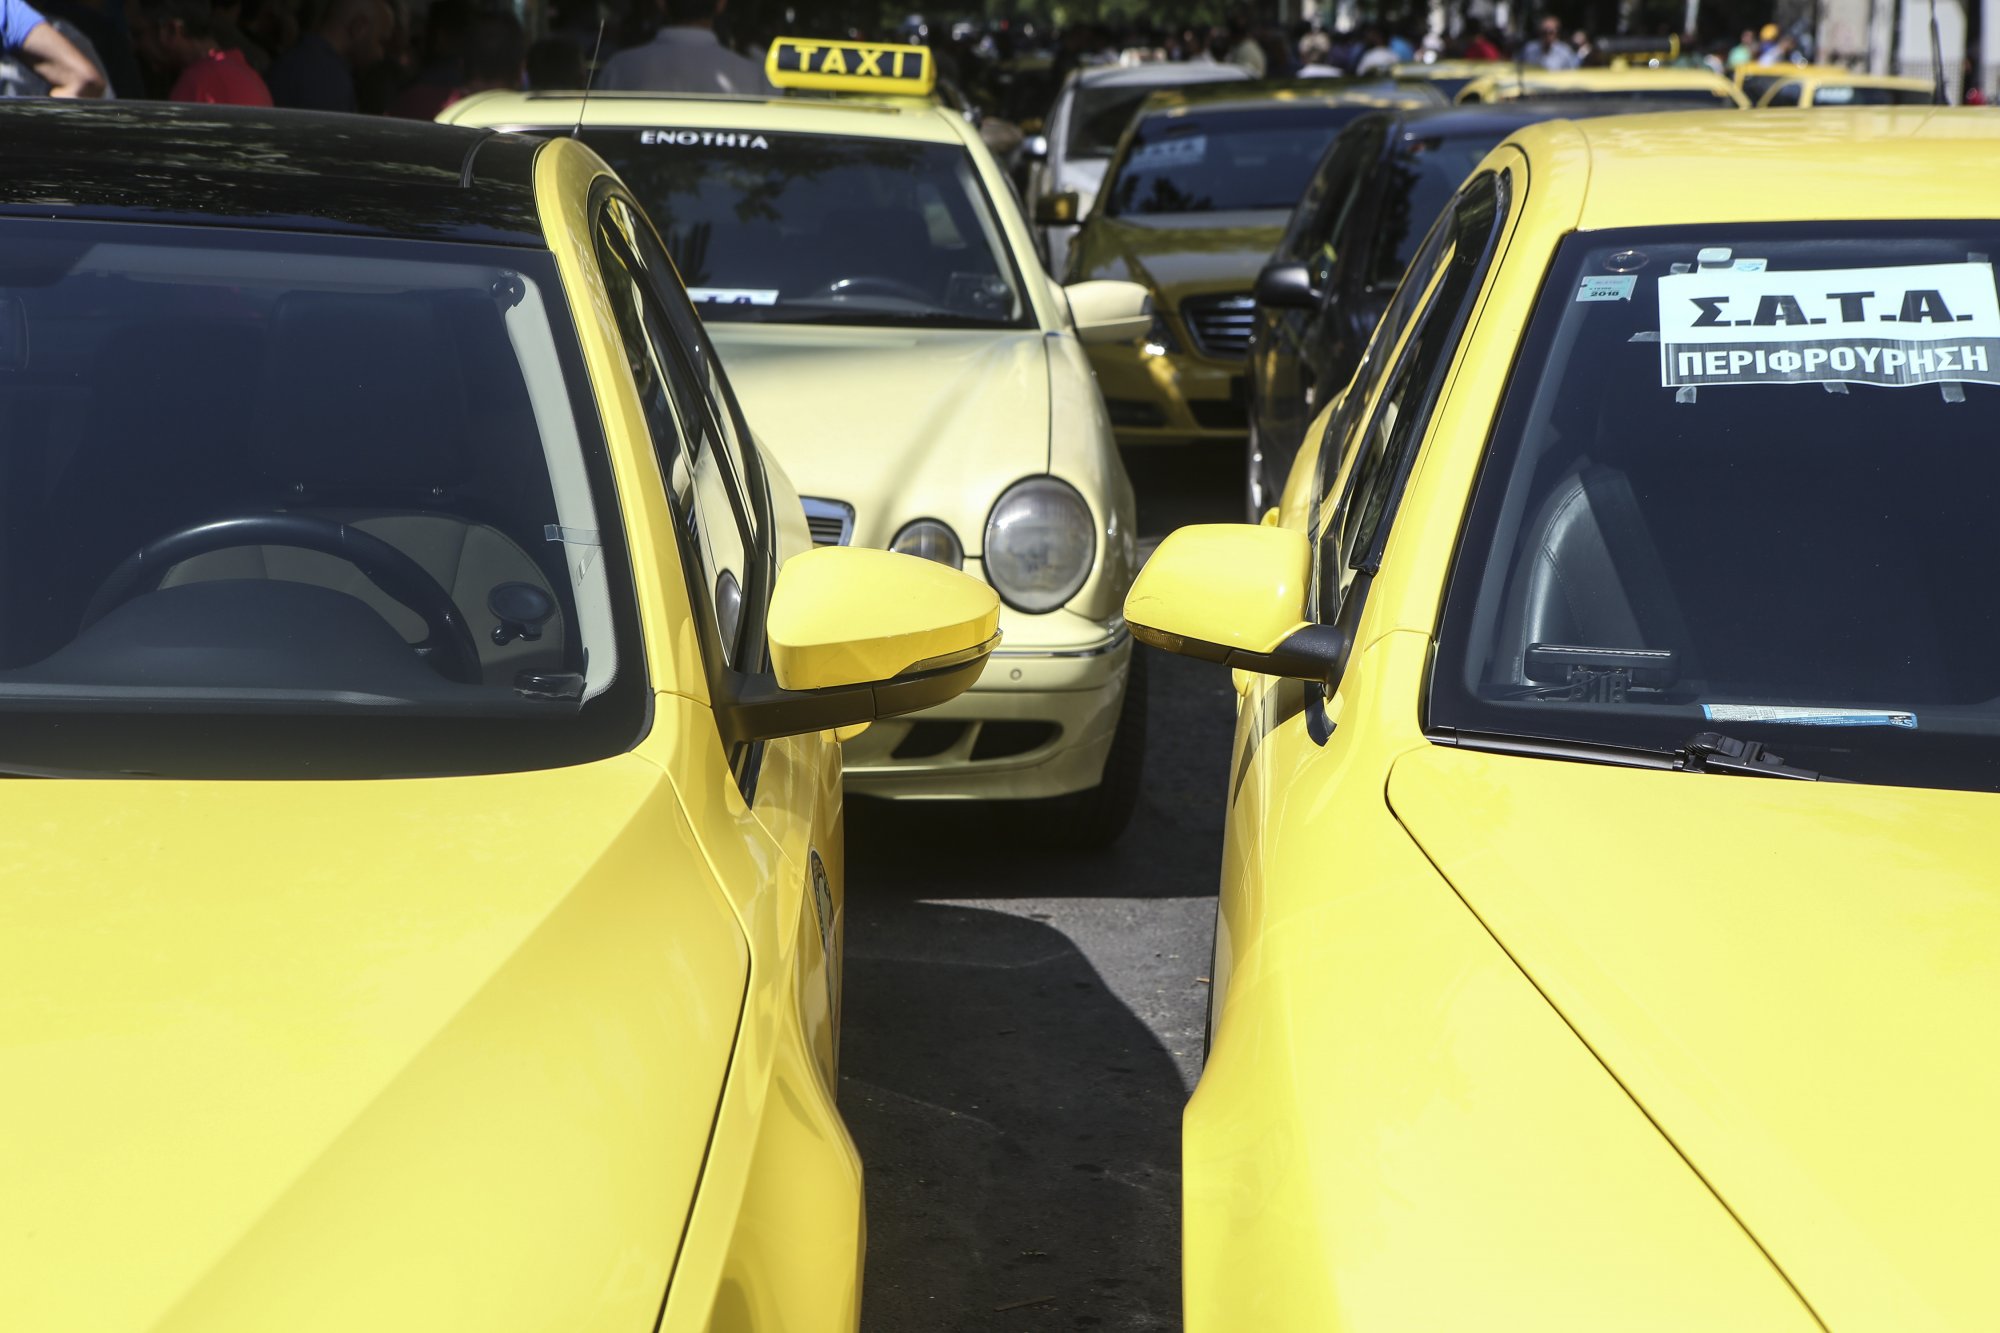 Ταξί: Tετραήμερη πανελλαδική απεργία στα ταξί